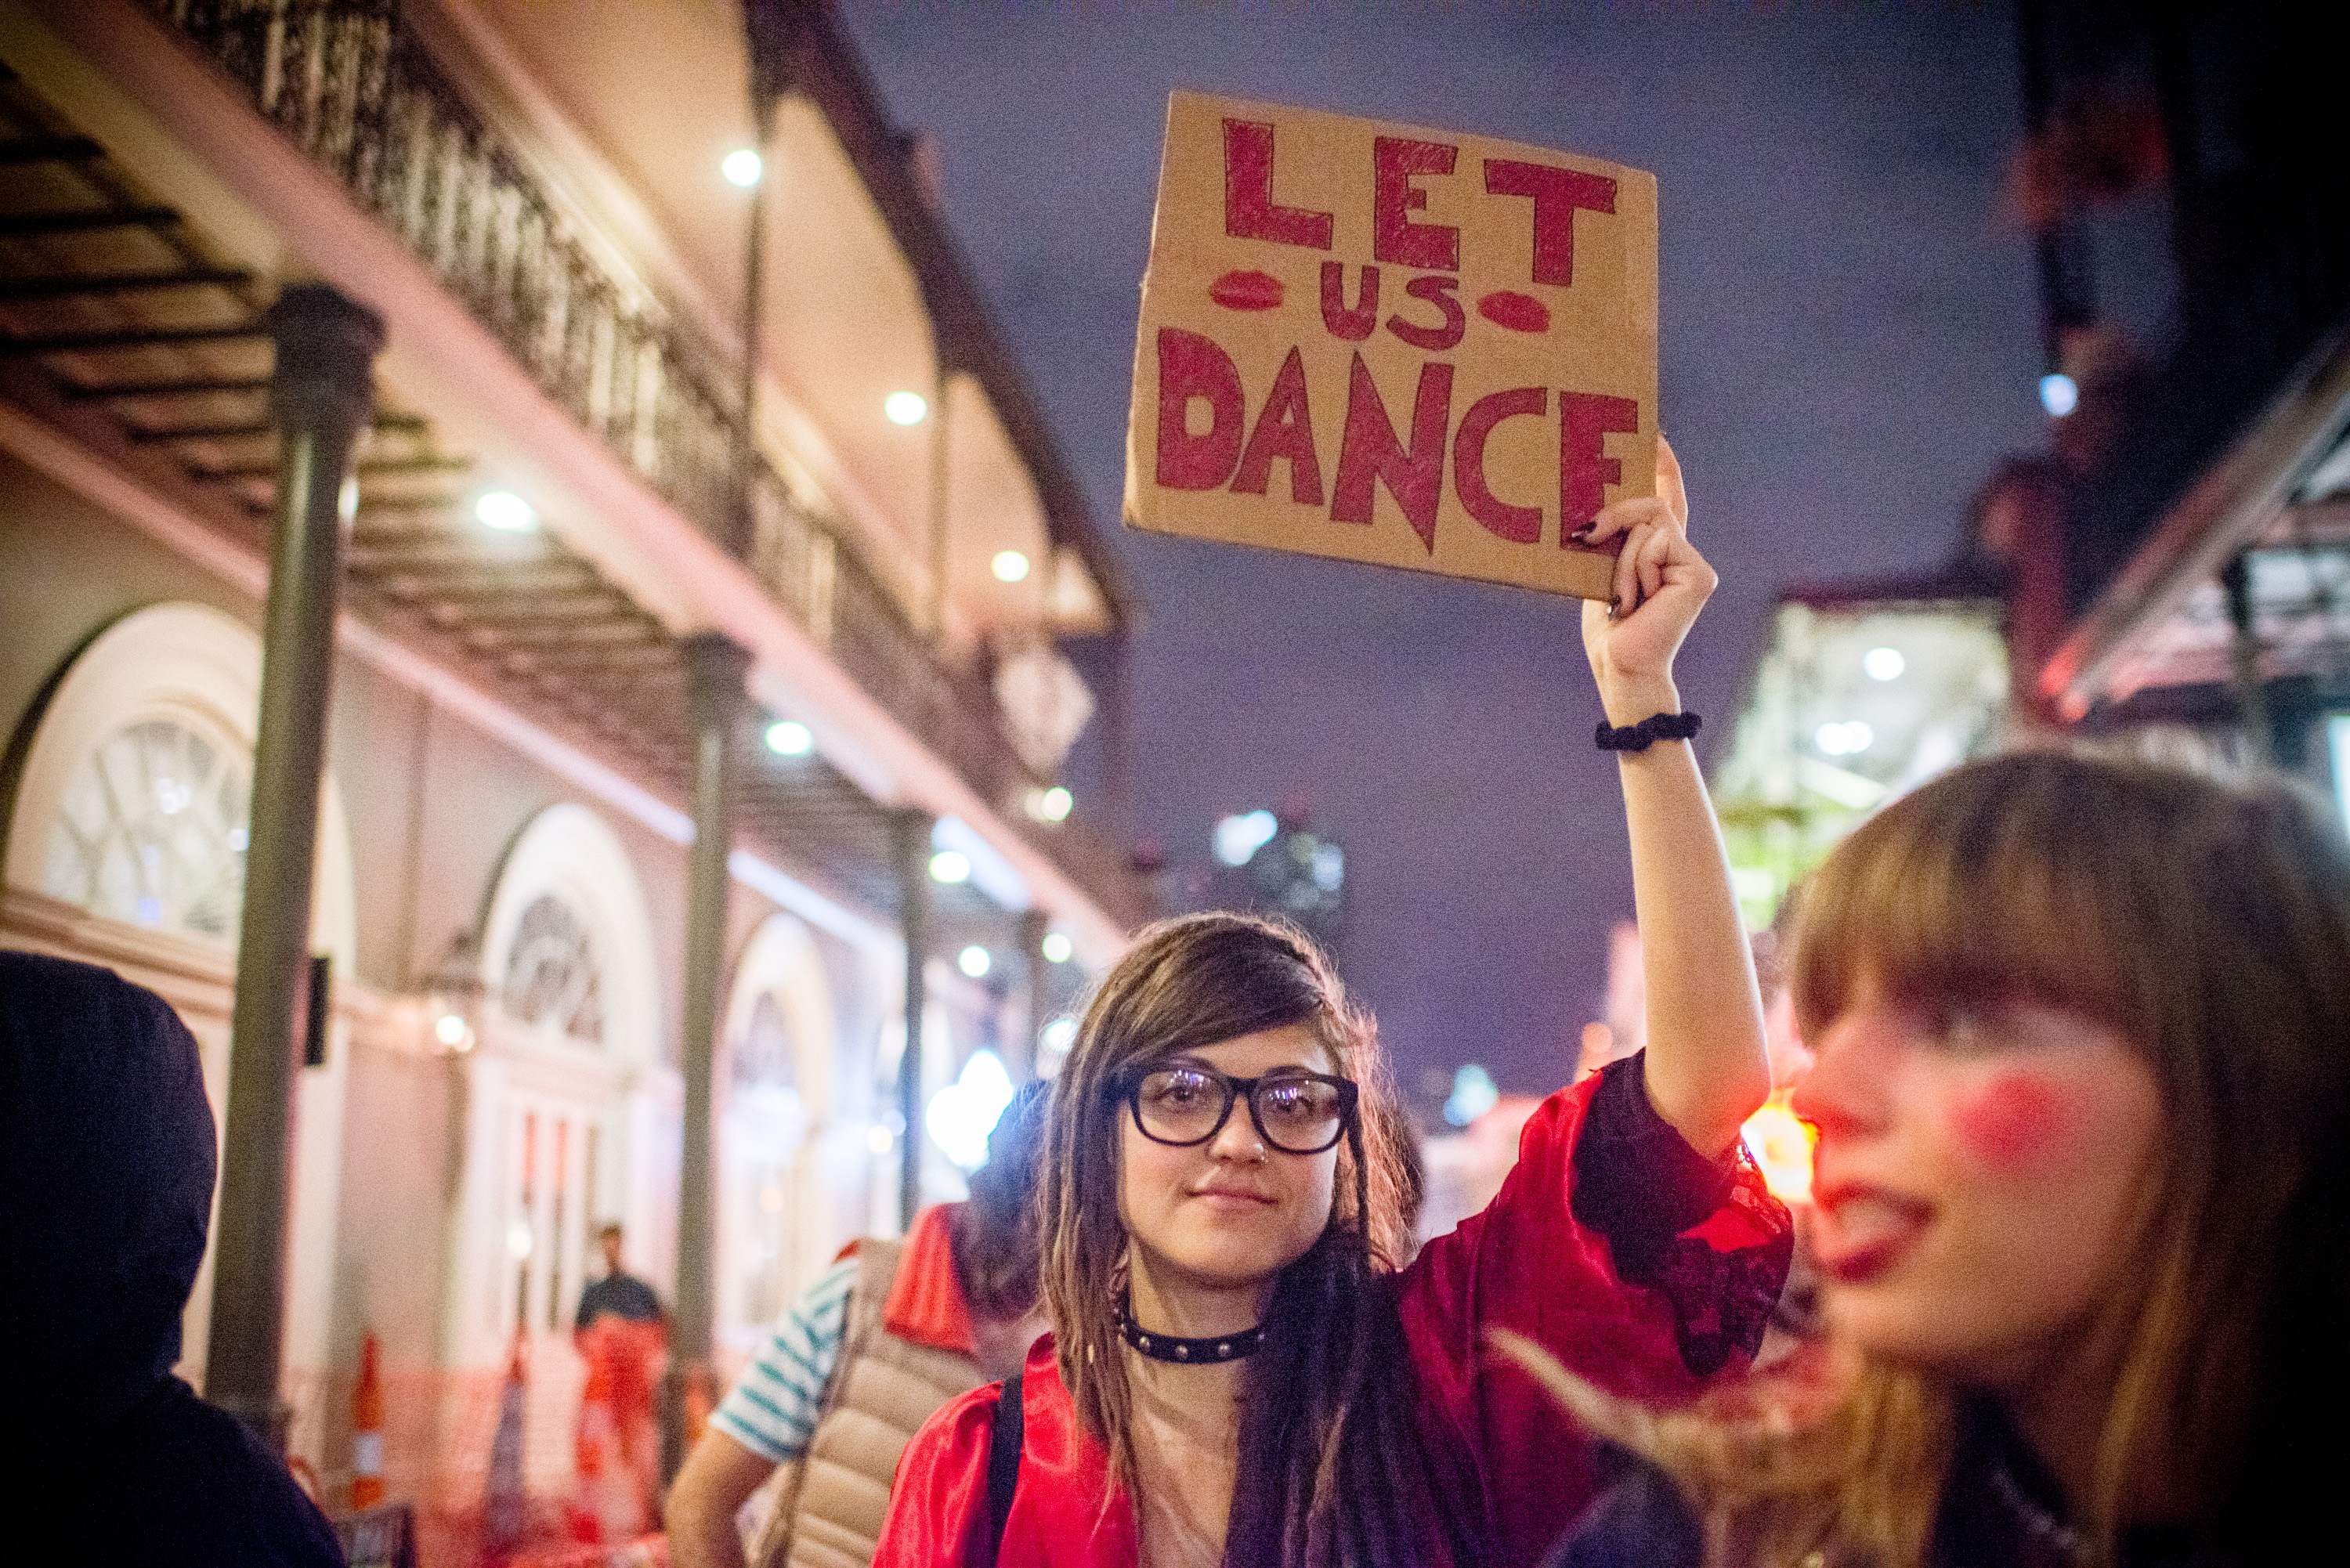 لافتات تطالب بالسماح بالرقص